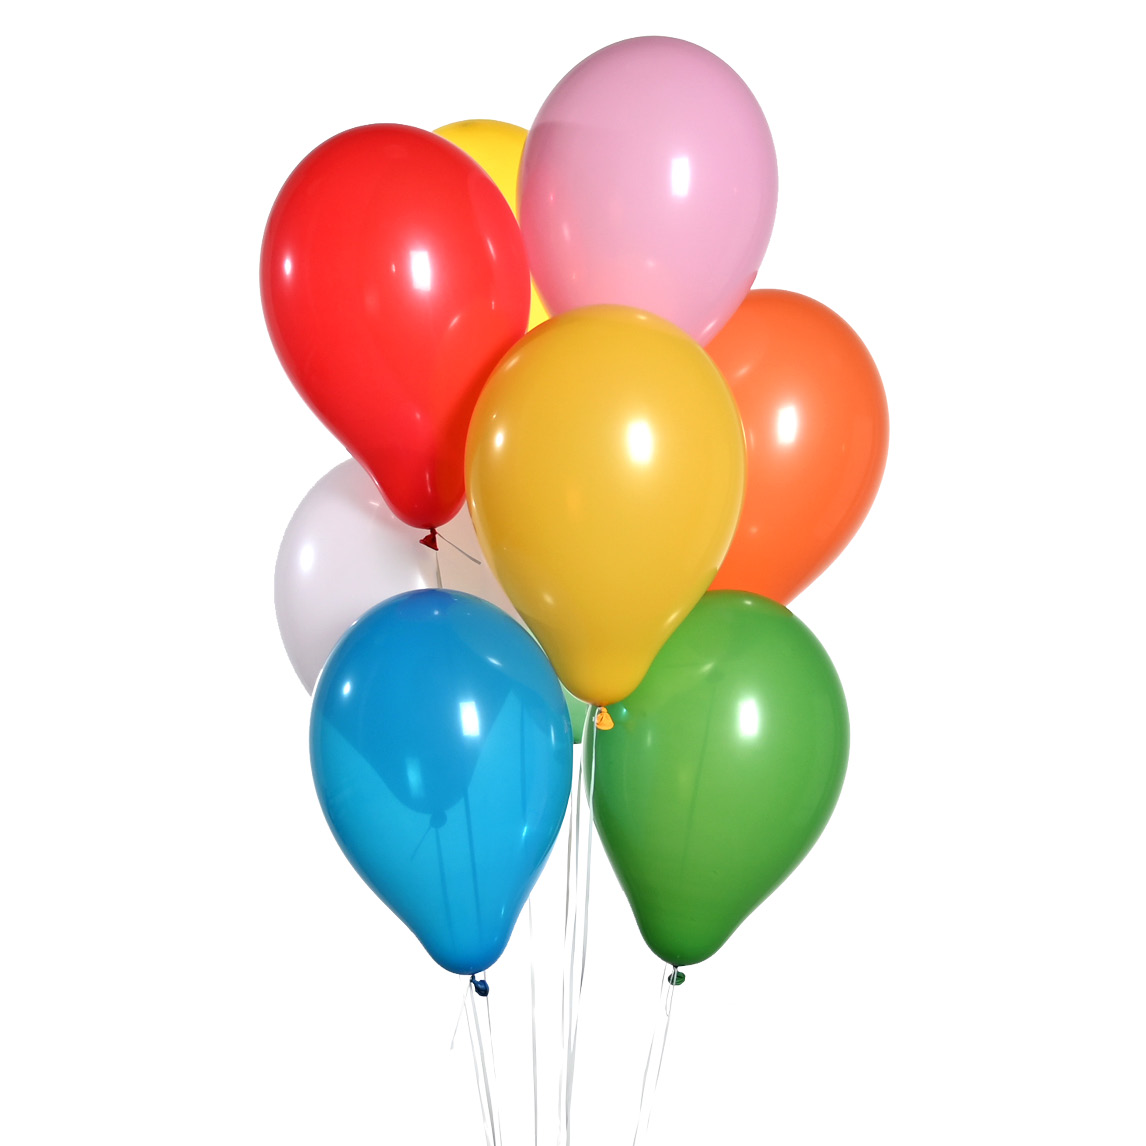 Воздушные шары Цветные 9 шт. воздушные шары из фольги 16 дюймов 32 дюйма 0 9 цифр 9 цветов шарики для день рождения